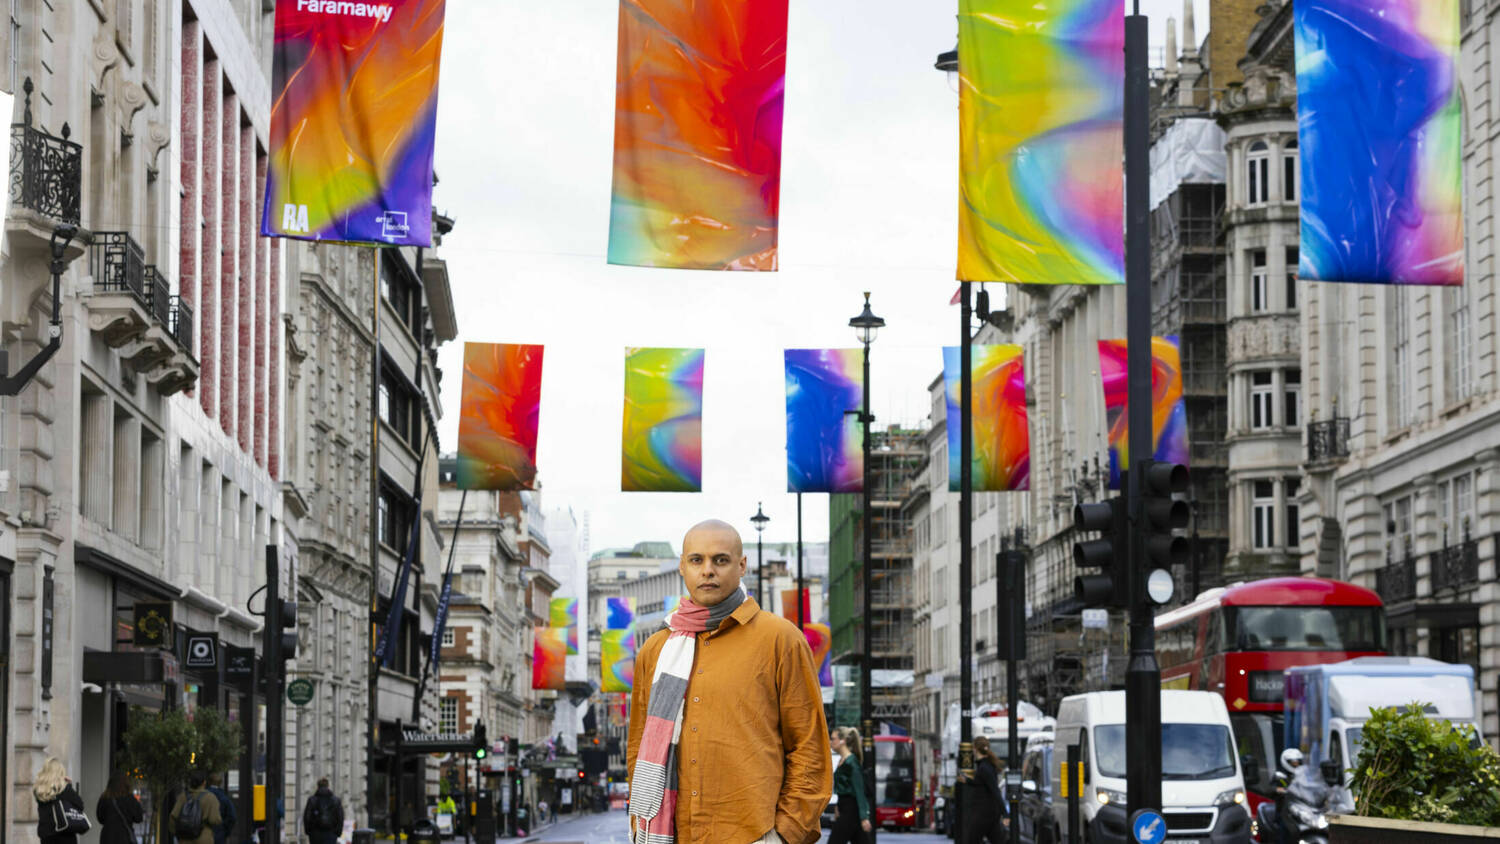 Adham Faramawy Rainbow Flags 3